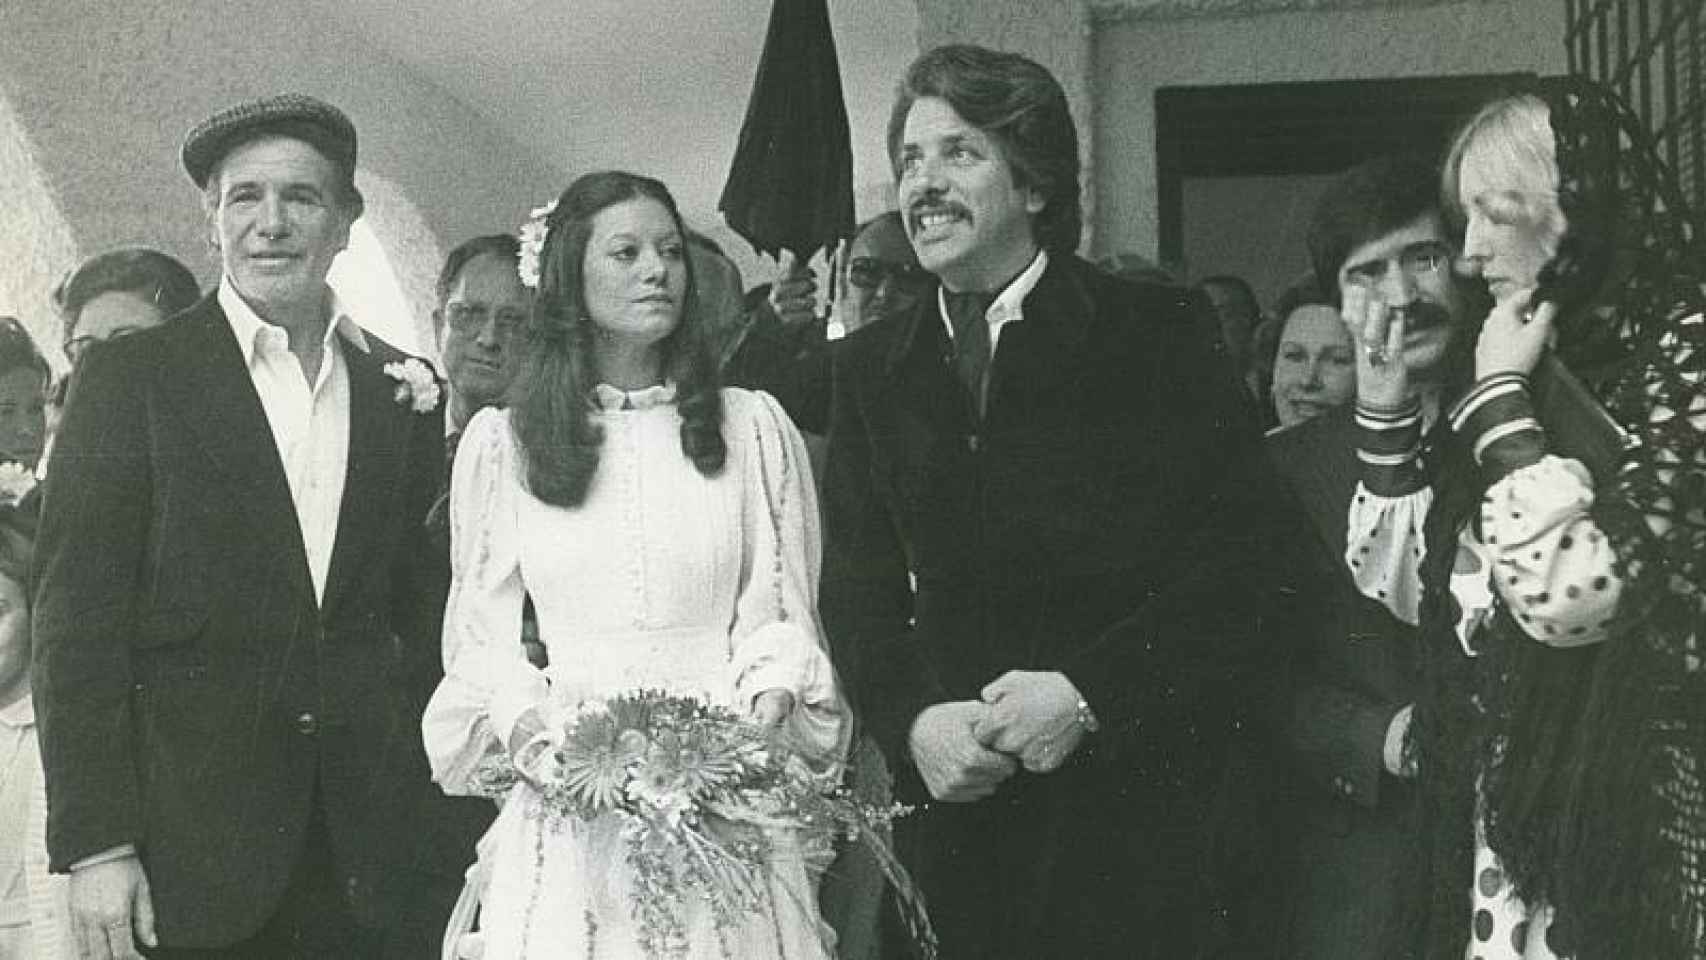 La popular boda de Teresa y Eduardo, orquestada por su padre, Paco Rabal.